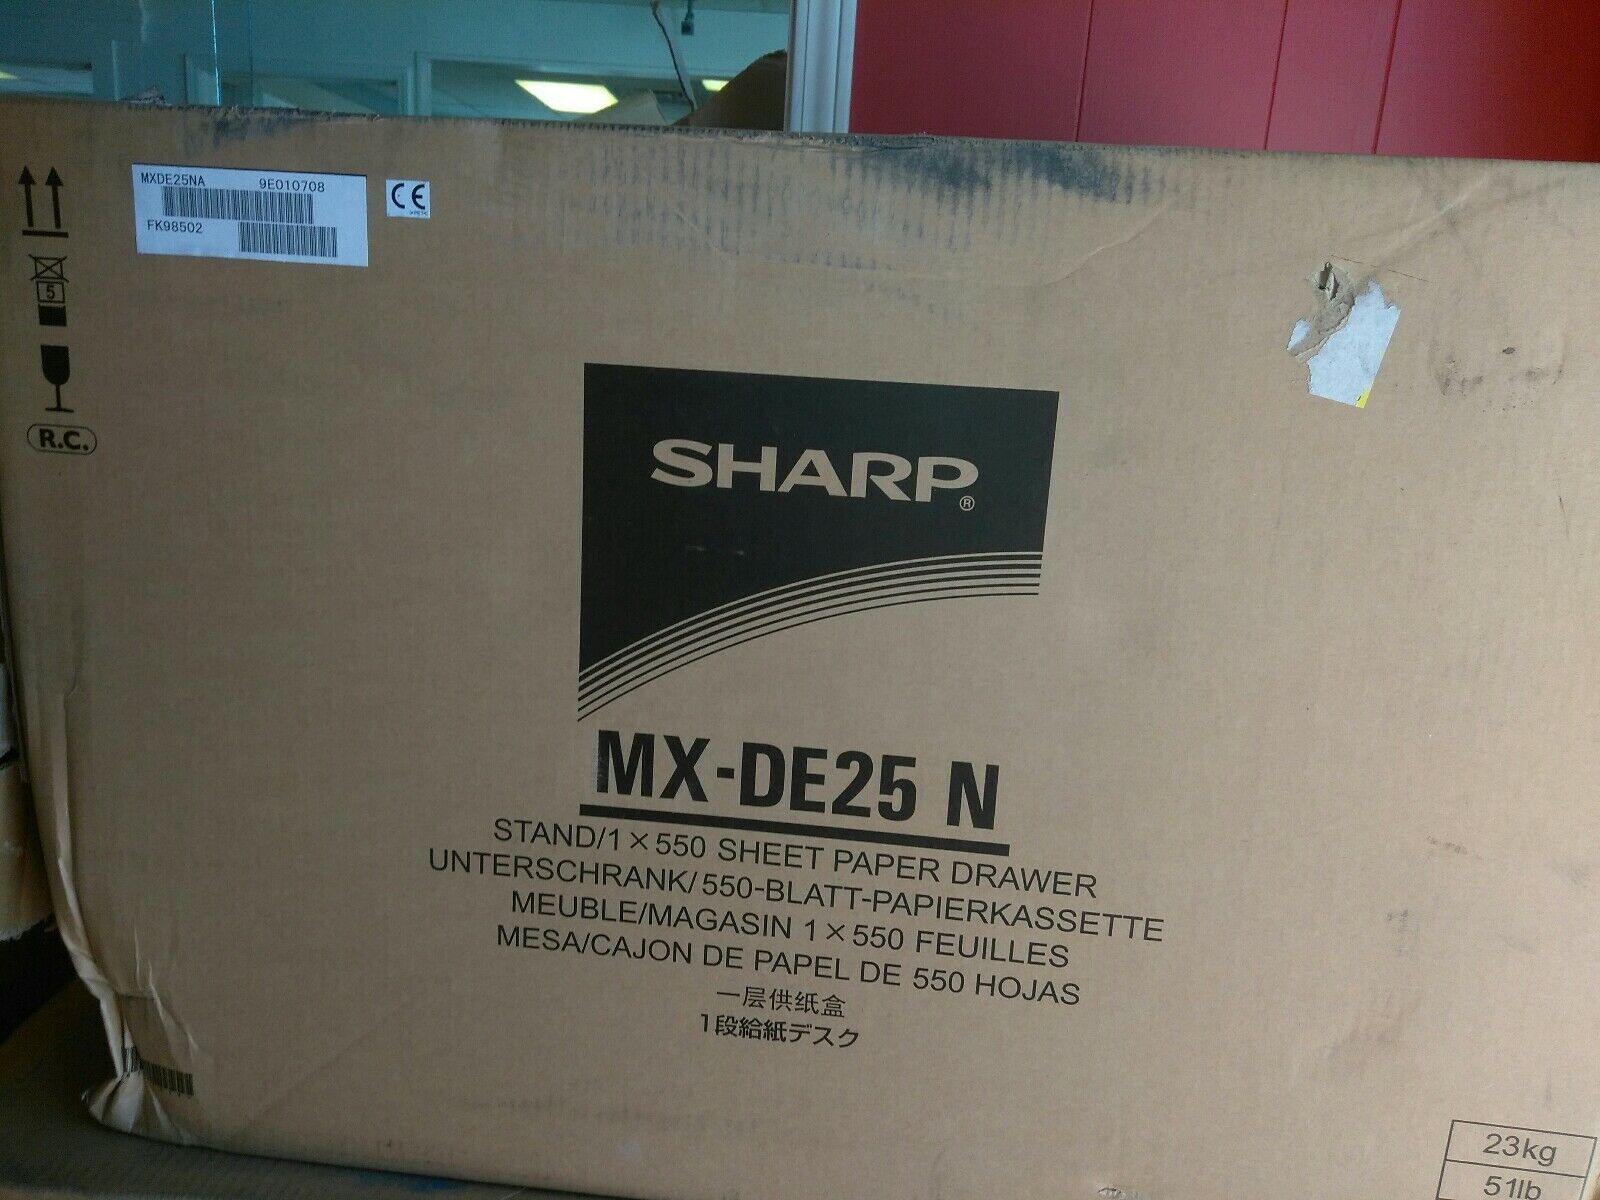 (1) NEW Sharp Stand/1 x 550-sheet Paper Drawer MX-DE25N